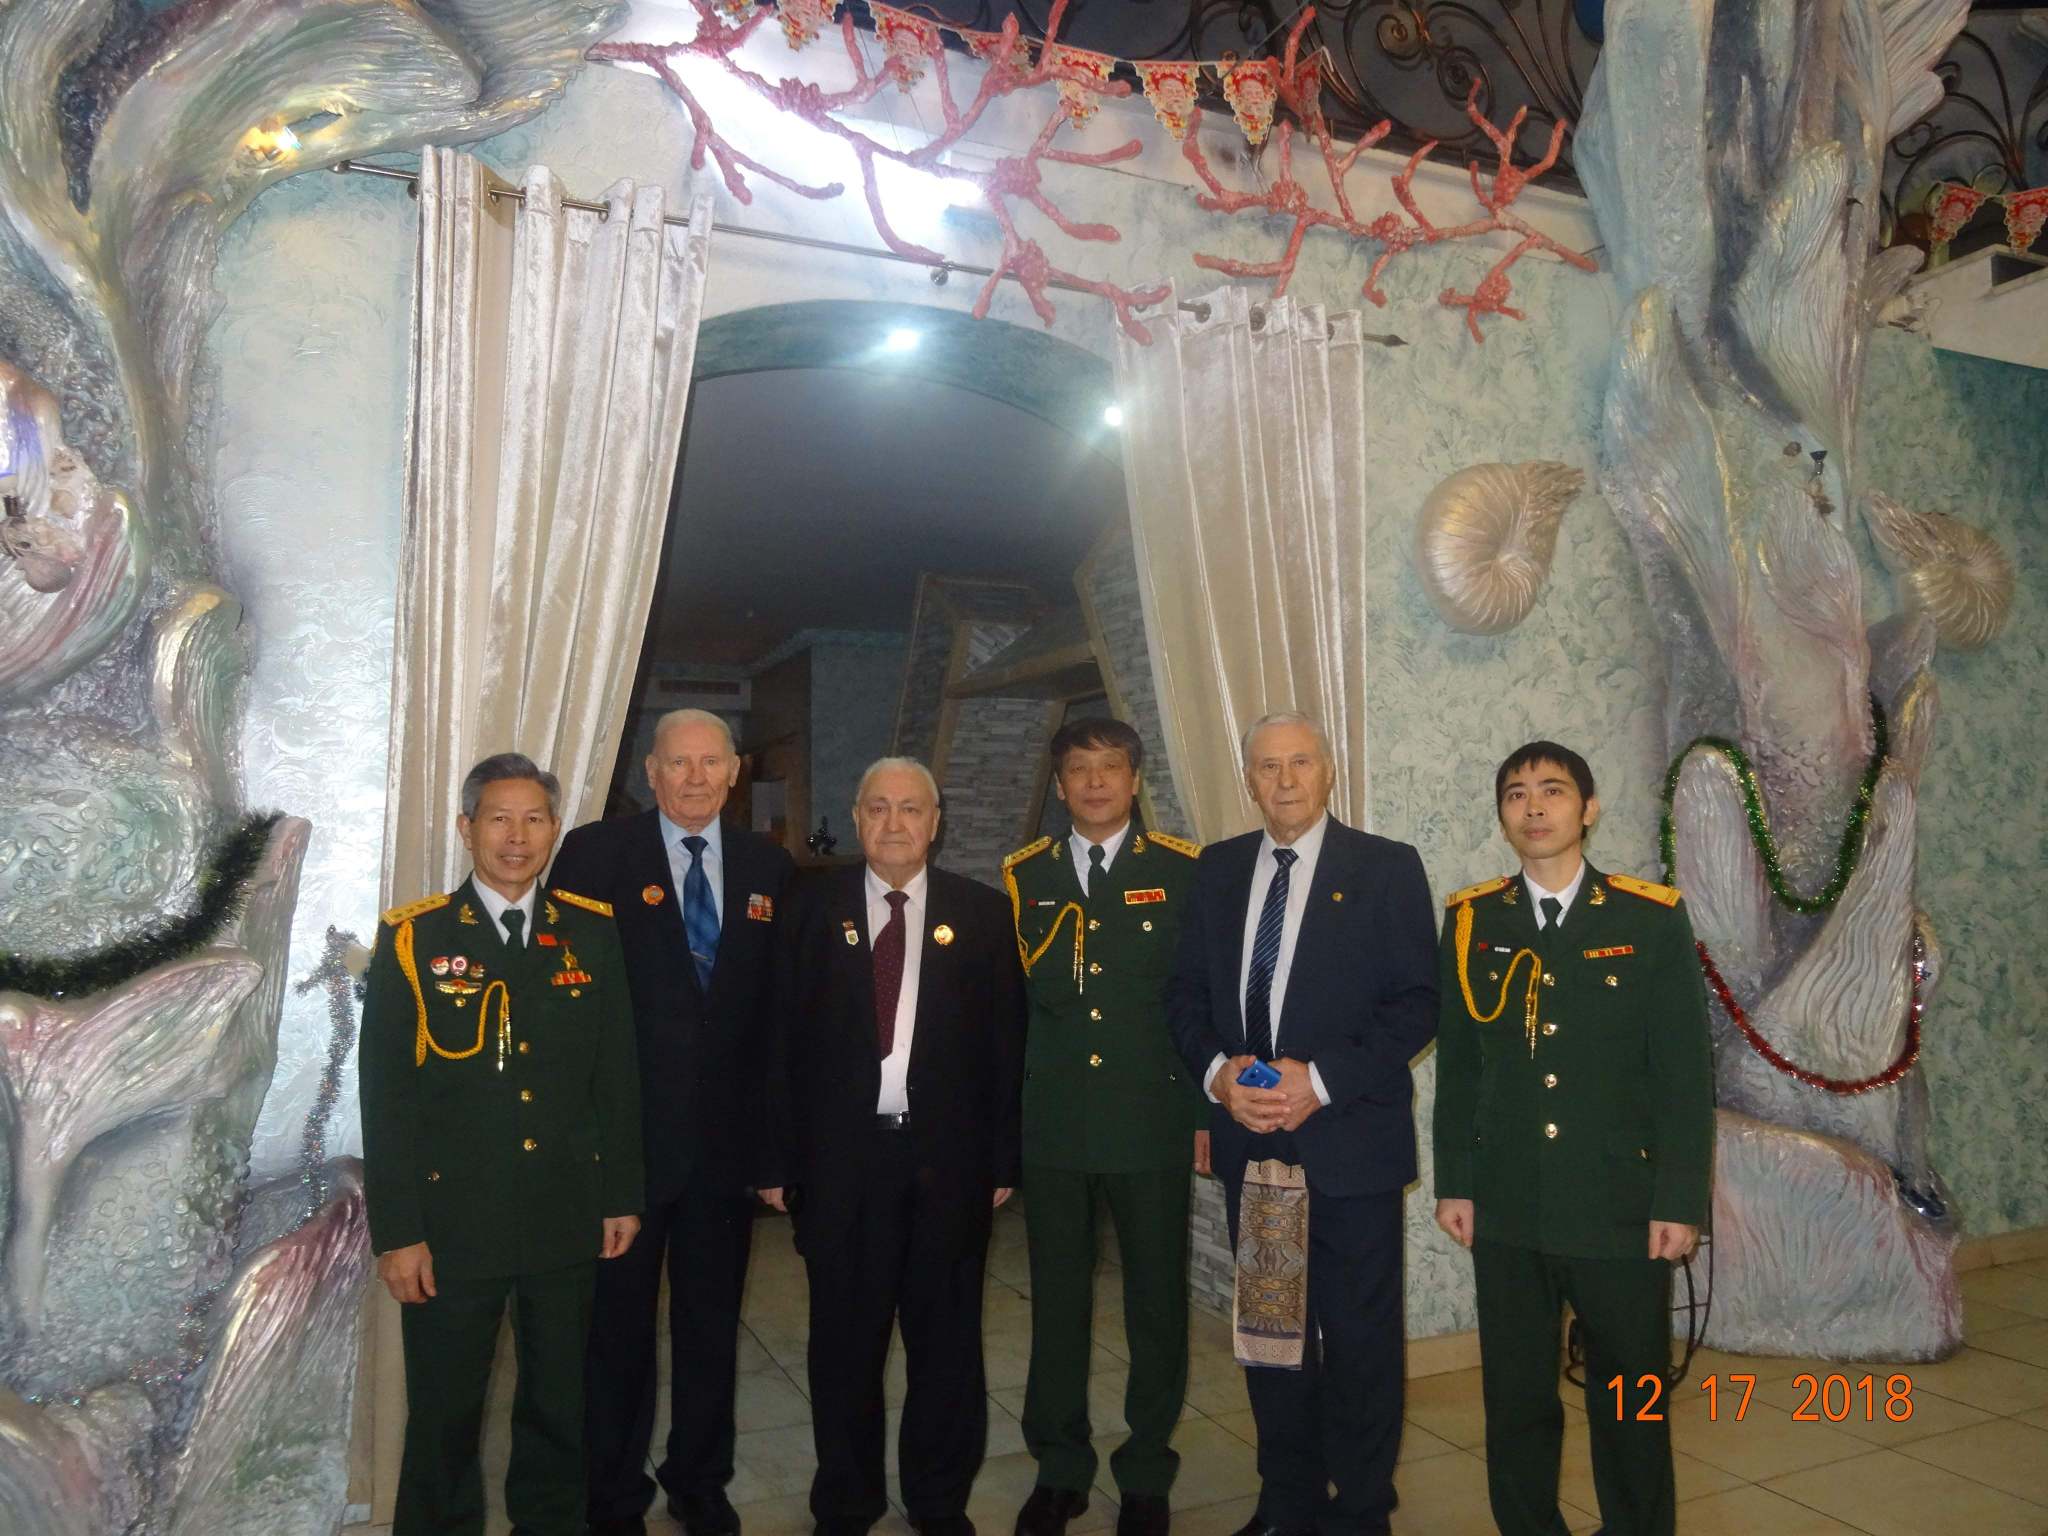 Kiev: Lễ kỷ niệm 74 năm ngày thành lập quân đội nhân dân Việt Nam và 29 năm ngày quốc phòng toàn dân